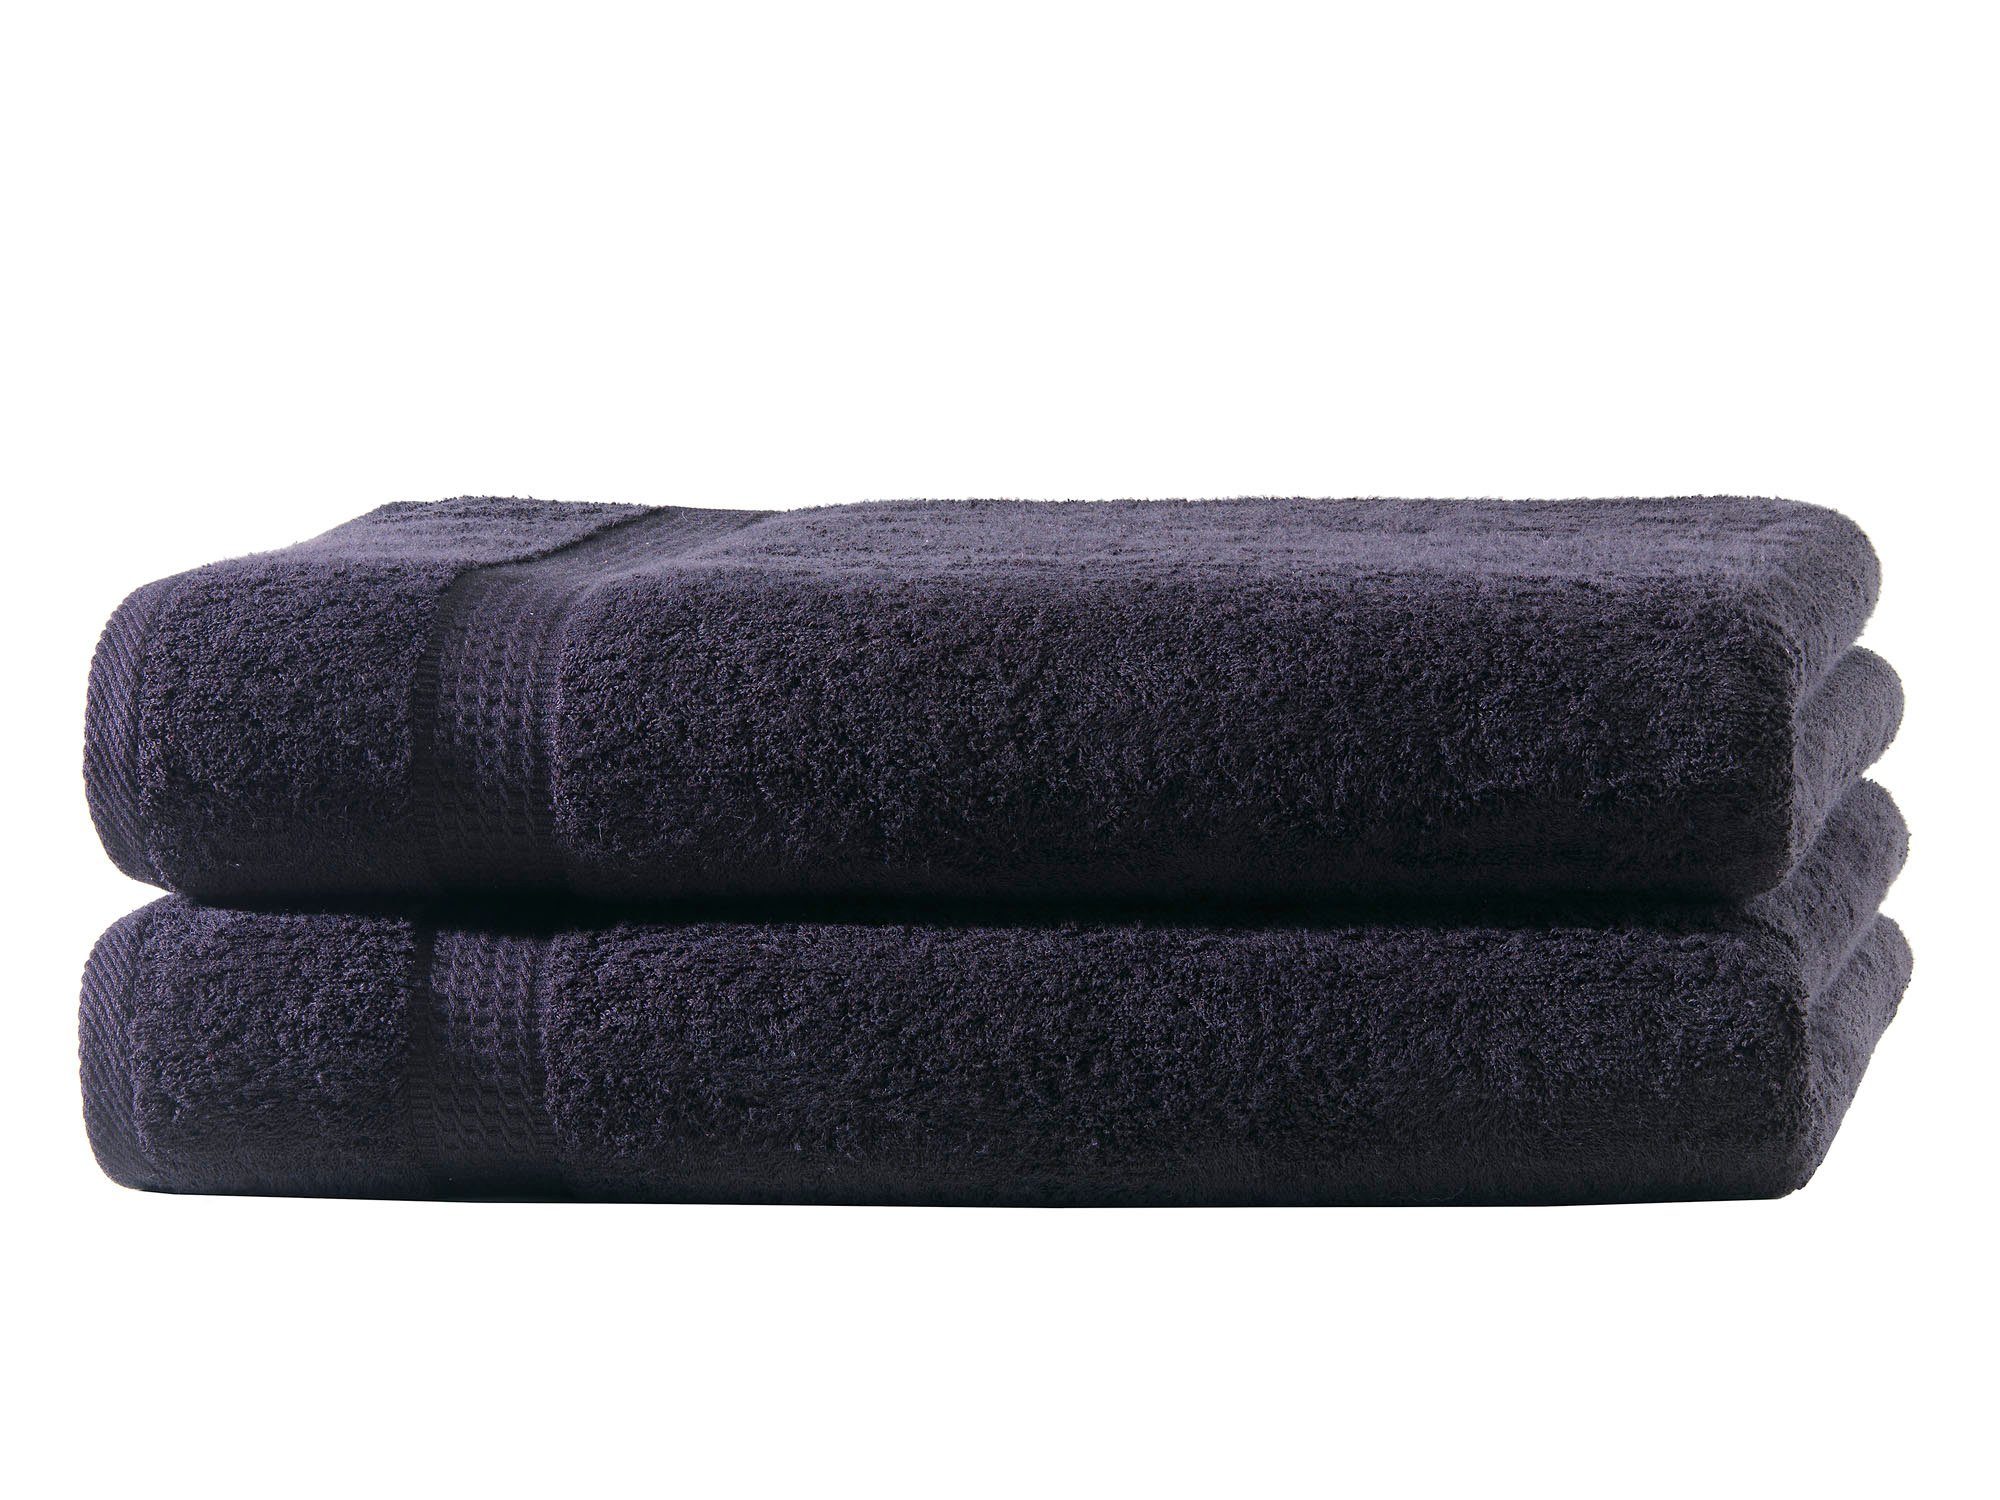 Hometex Premium Textiles Handtuch in Premium Qualität 500 g/m², Feinster Frottier-Stoff 100% Baumwolle, 2x Duschtuch, Kuschelig weich, saugfähig, Extra schwere, flauschige Hotel-Qualität